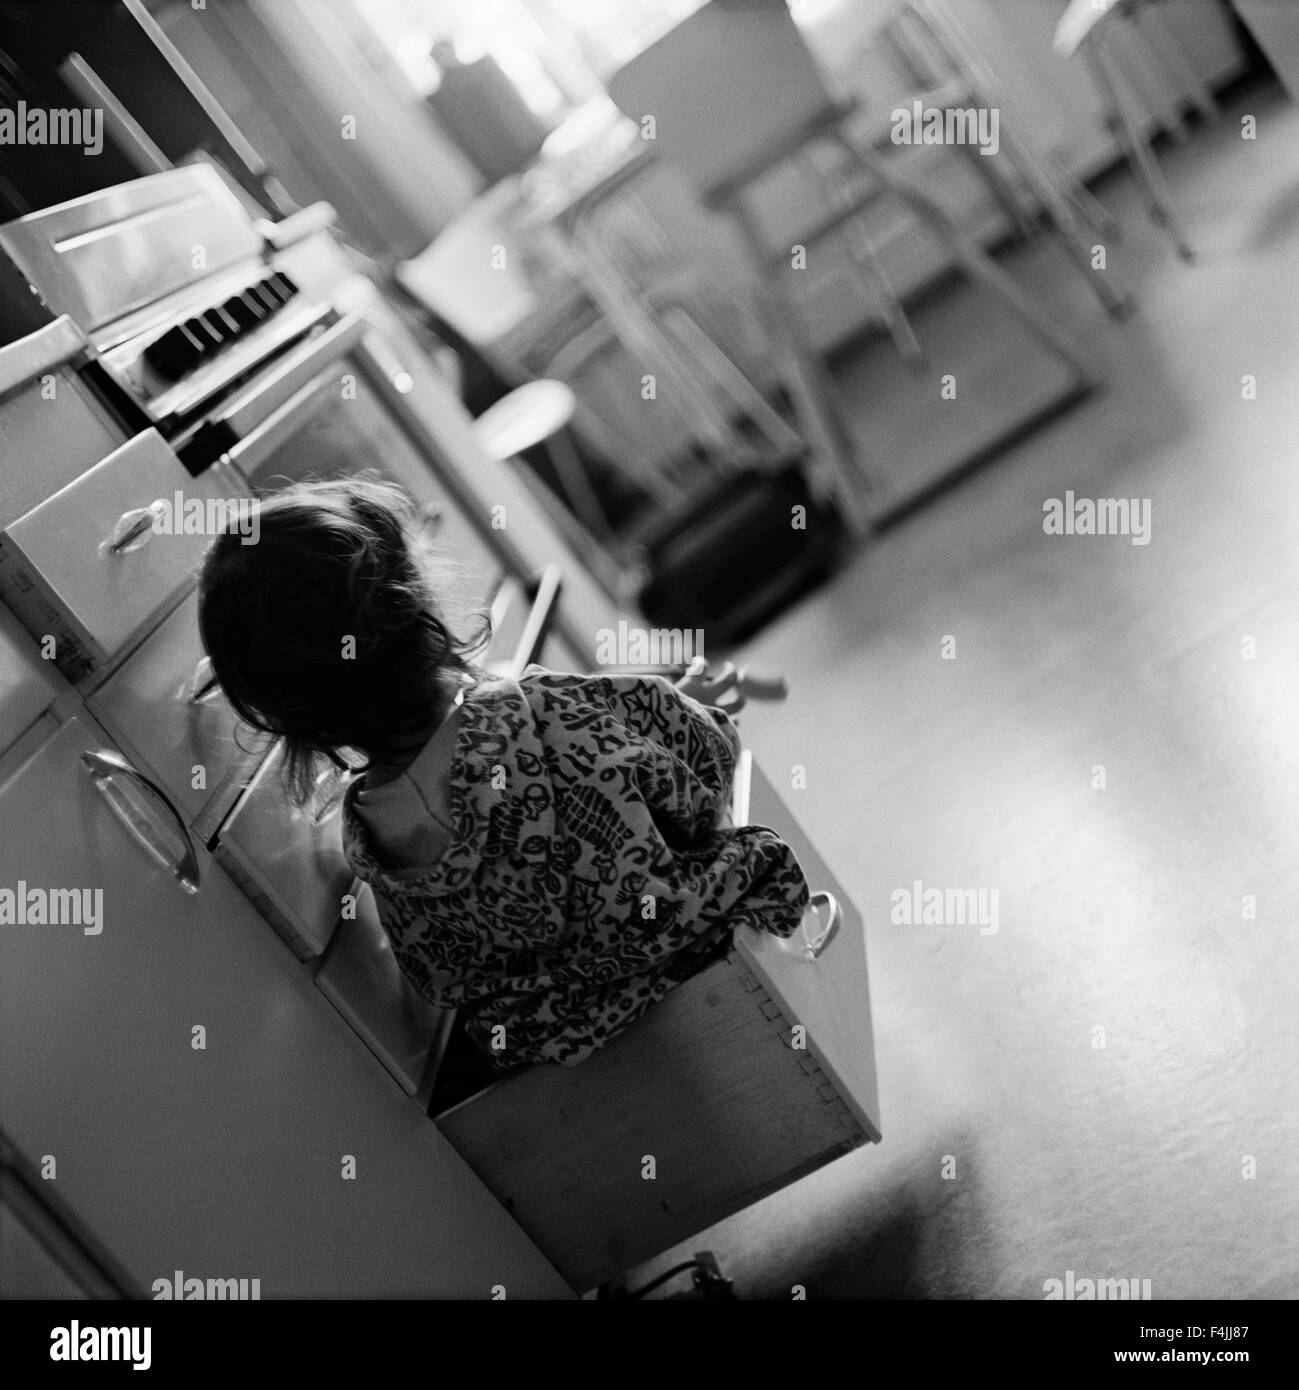 Fille assise à l'intérieur de tiroir dans la cuisine, vue arrière Banque D'Images